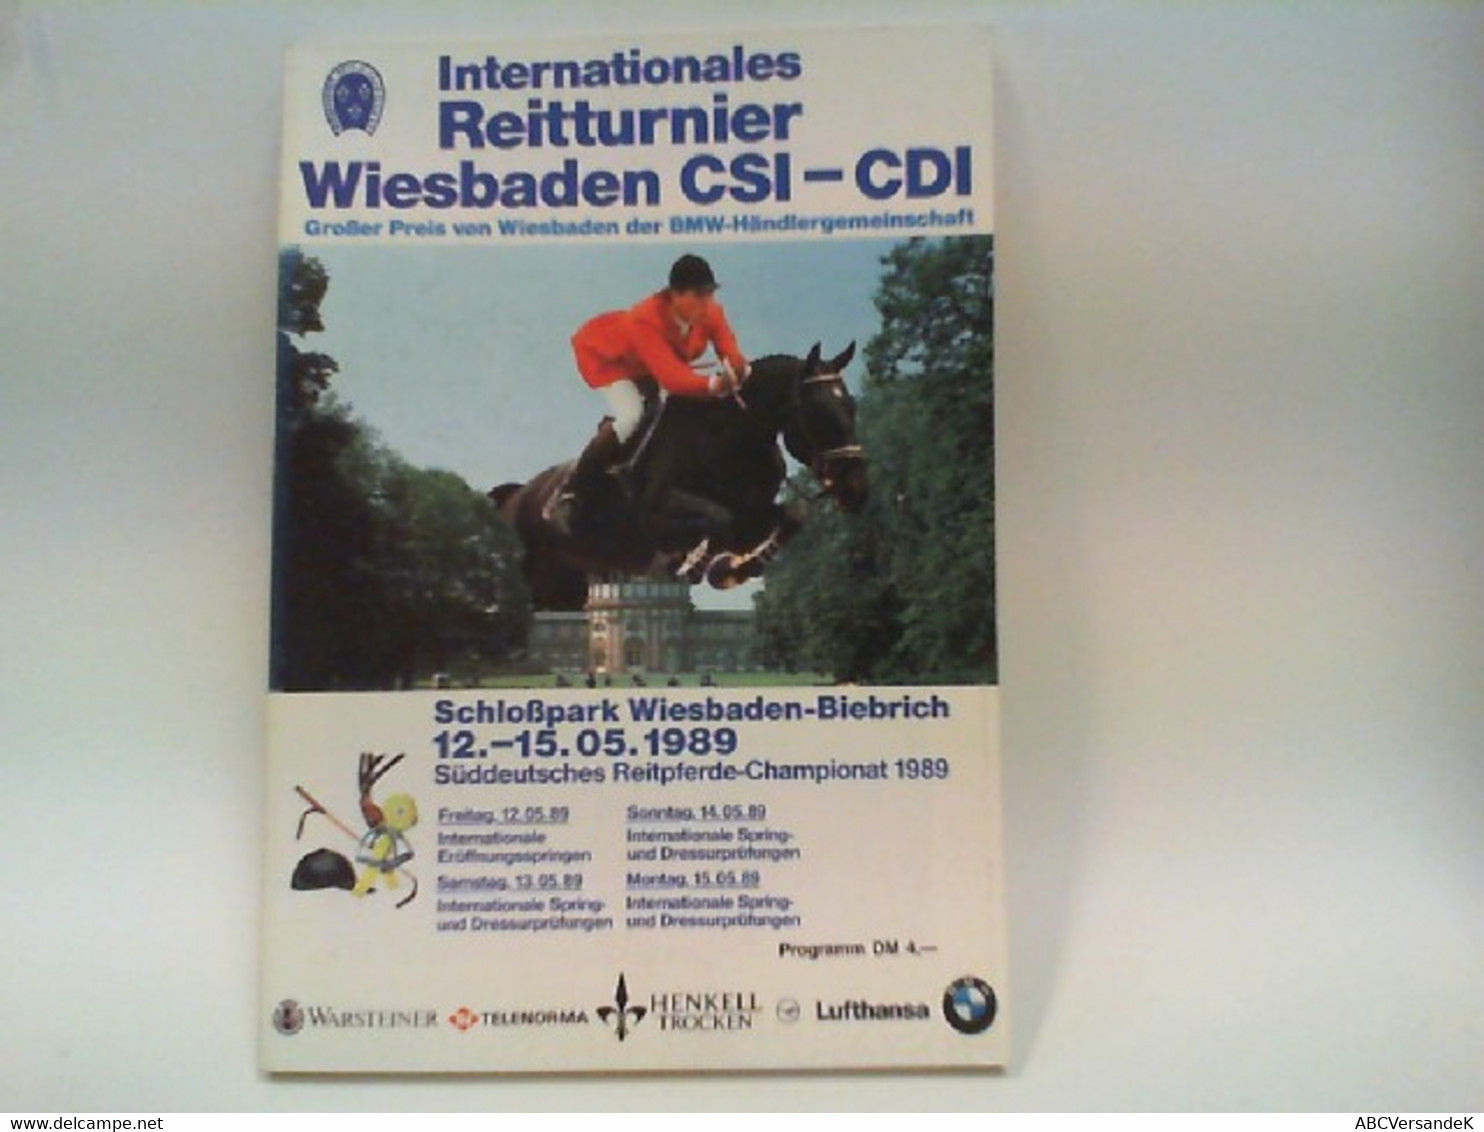 Internationales Reitturnier Wiesbaden 12.-15.05.1989 - Sport